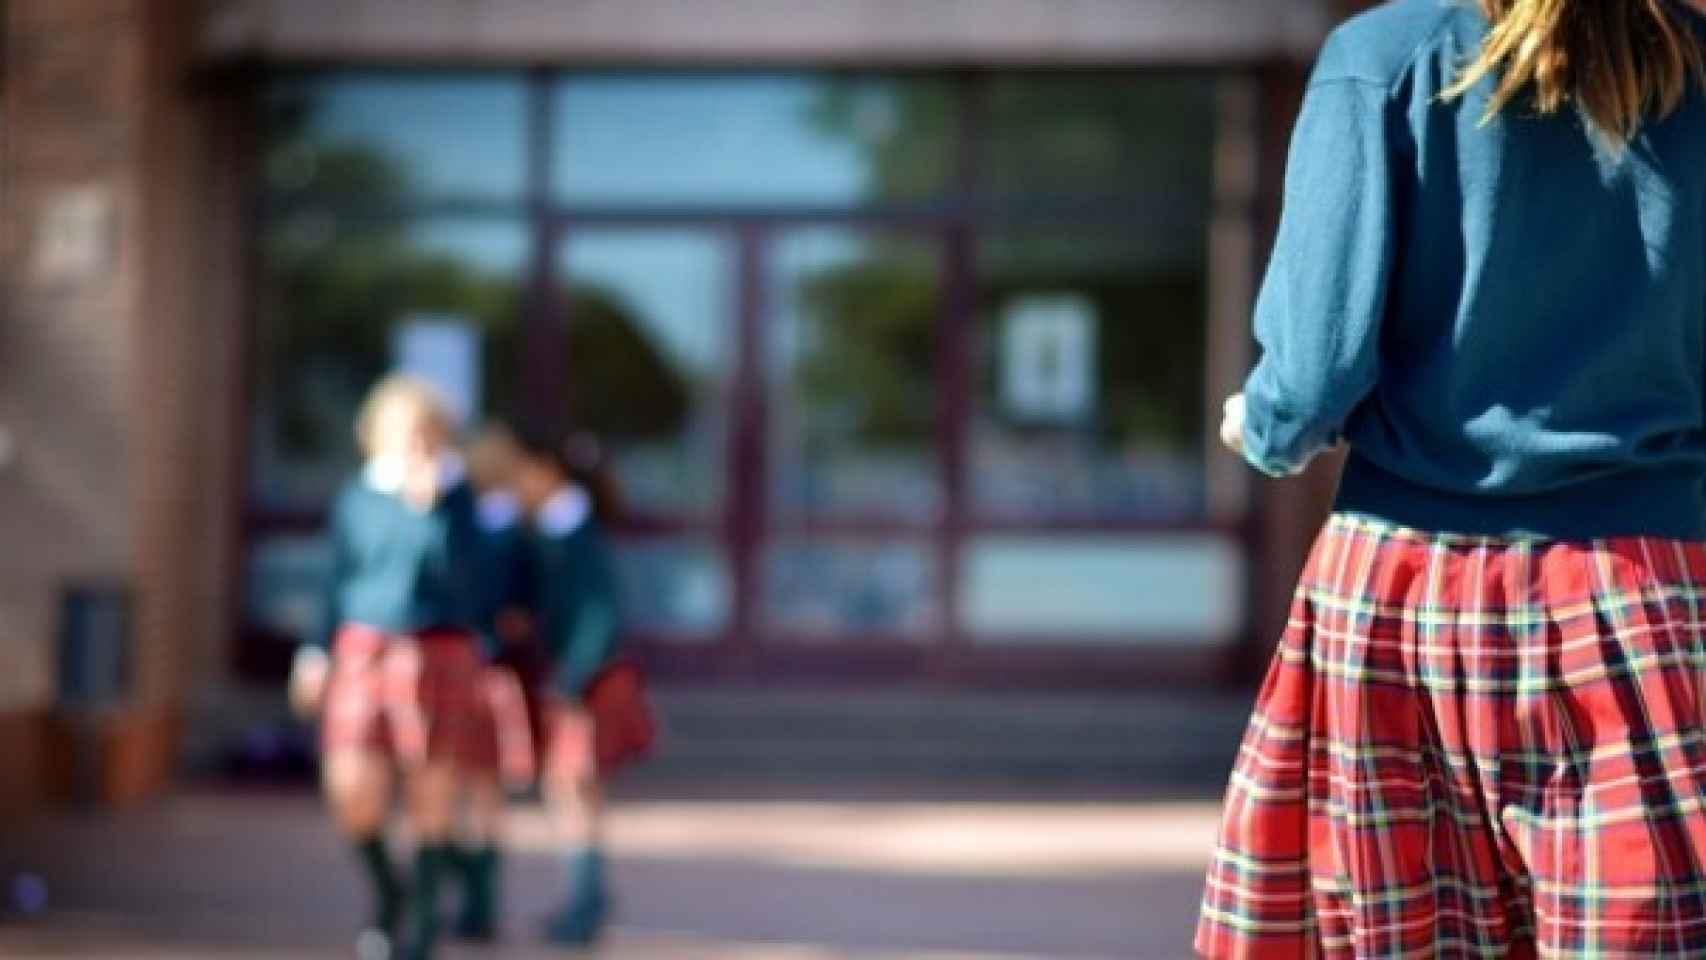 Un colegio católico de Palma elimina el uniforme femenino: "Las llevan la falda muy corta"